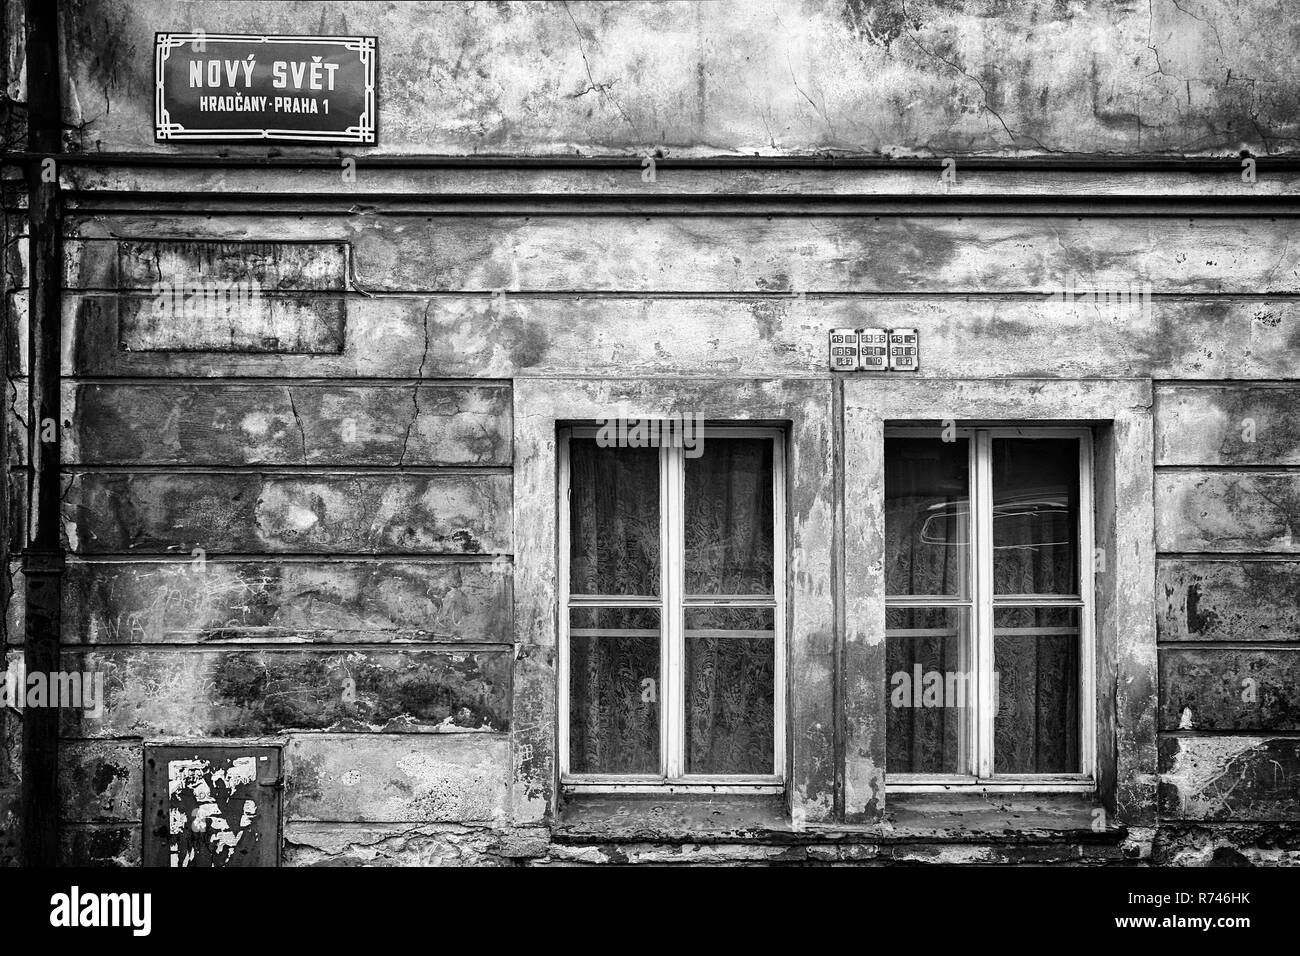 Tipica strada di Praga la placca indicante Nový Svět (Nuovo Mondo), un quarto vicino al Castello, applicato su una parete deteriorata di una casa con due finestre Foto Stock